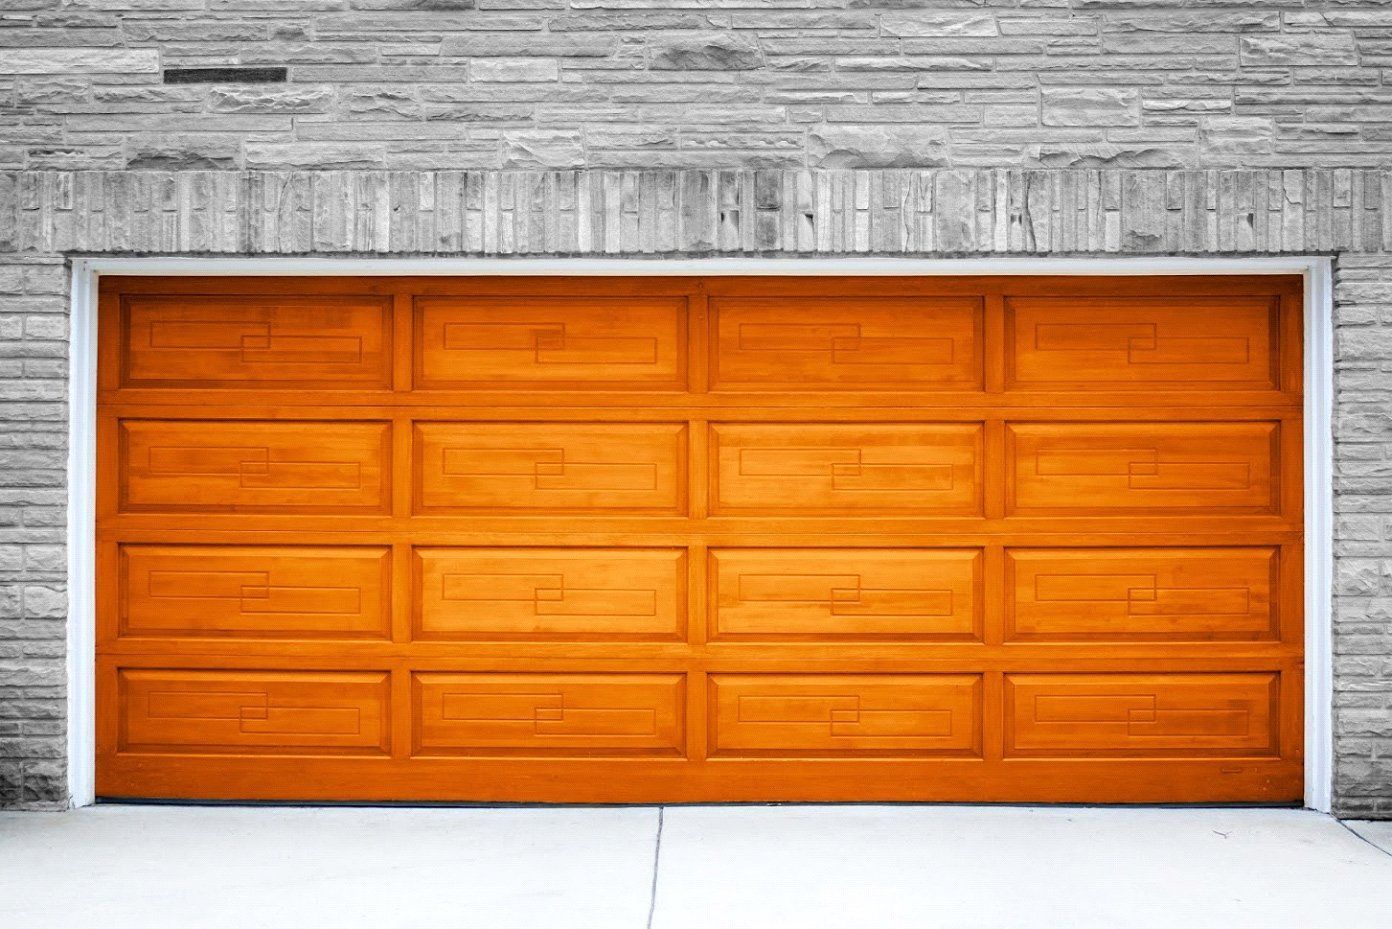 A Wooden Garage Door Is Sitting in Front of A Brick Wall - Rochester Hills, MI - J & B Doors